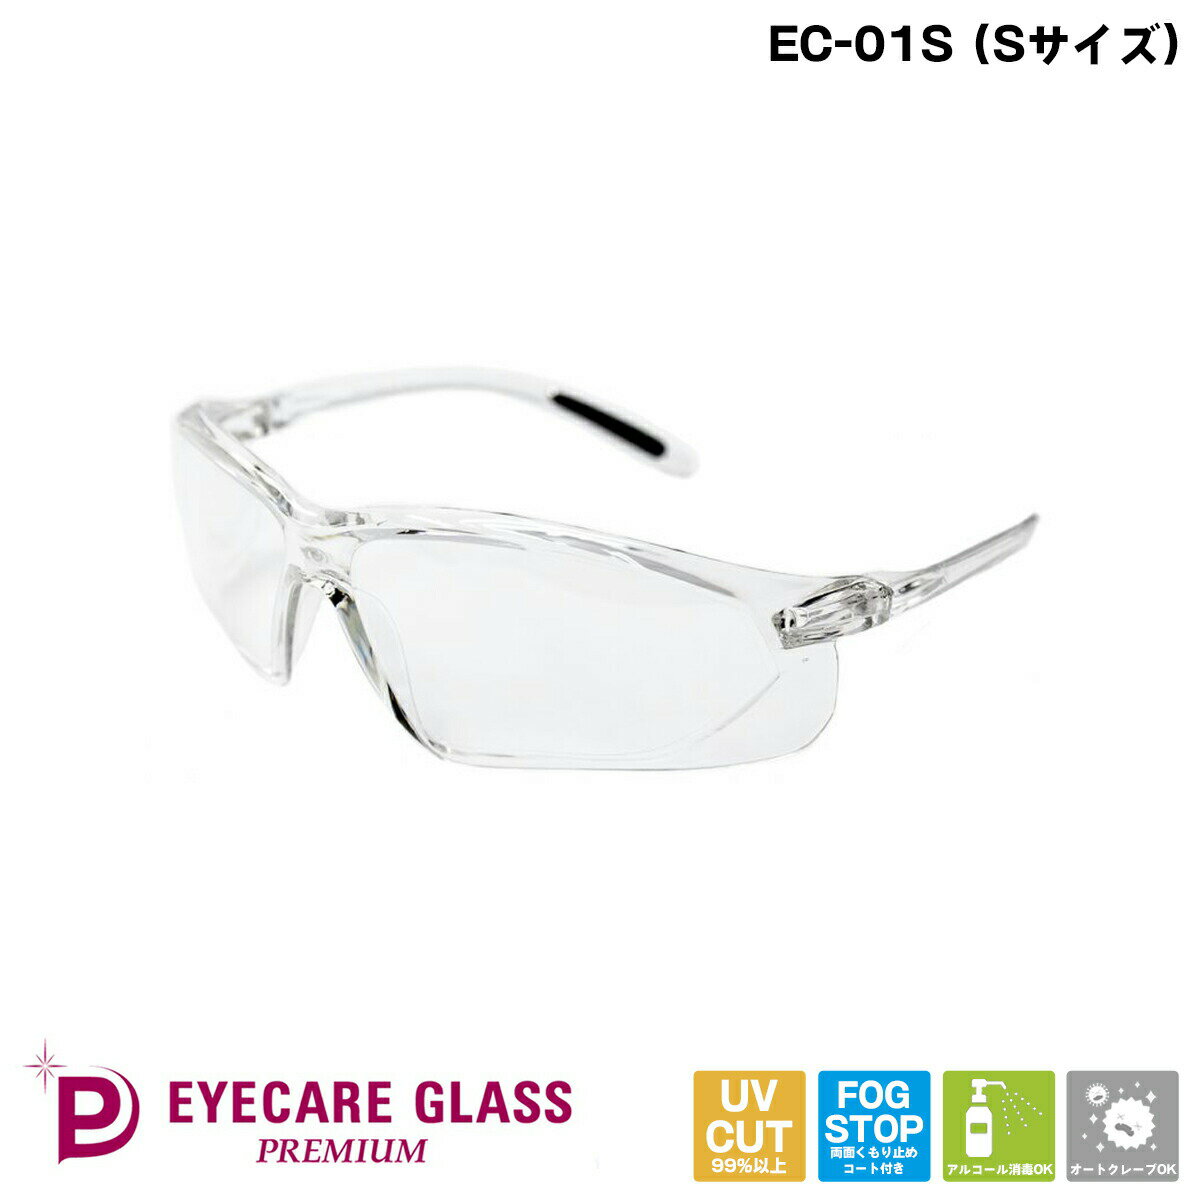 あす楽 月9ドラマ 医療用 メガネ EC-01S Premium アイケアグラス プレミアム Sサイズ くもり止めゴーグル 飛沫 感染 予防 対策 防止 ウィルス